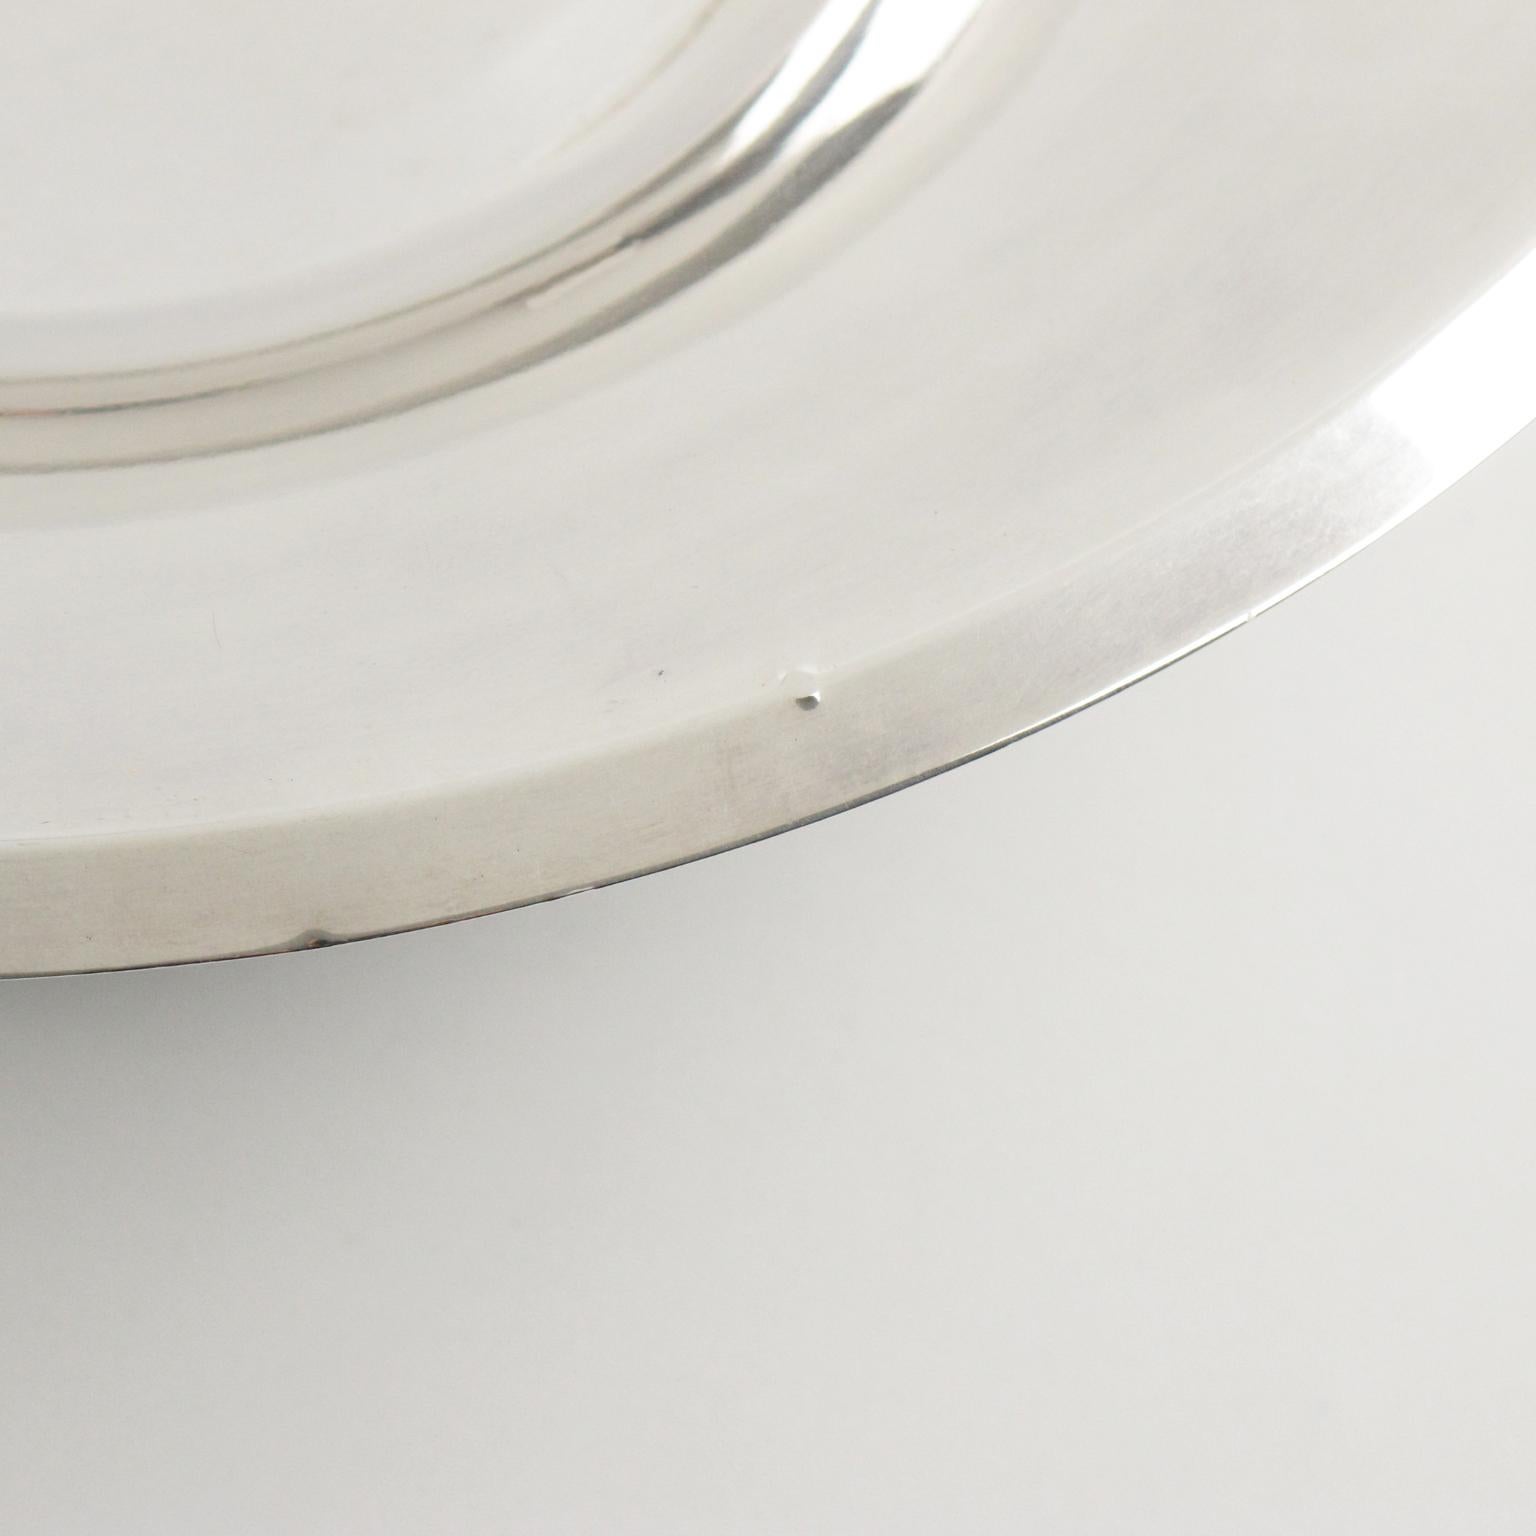 Art Deco Silver Plate Decorative Bowl Centerpiece, France 1930s For Sale 3